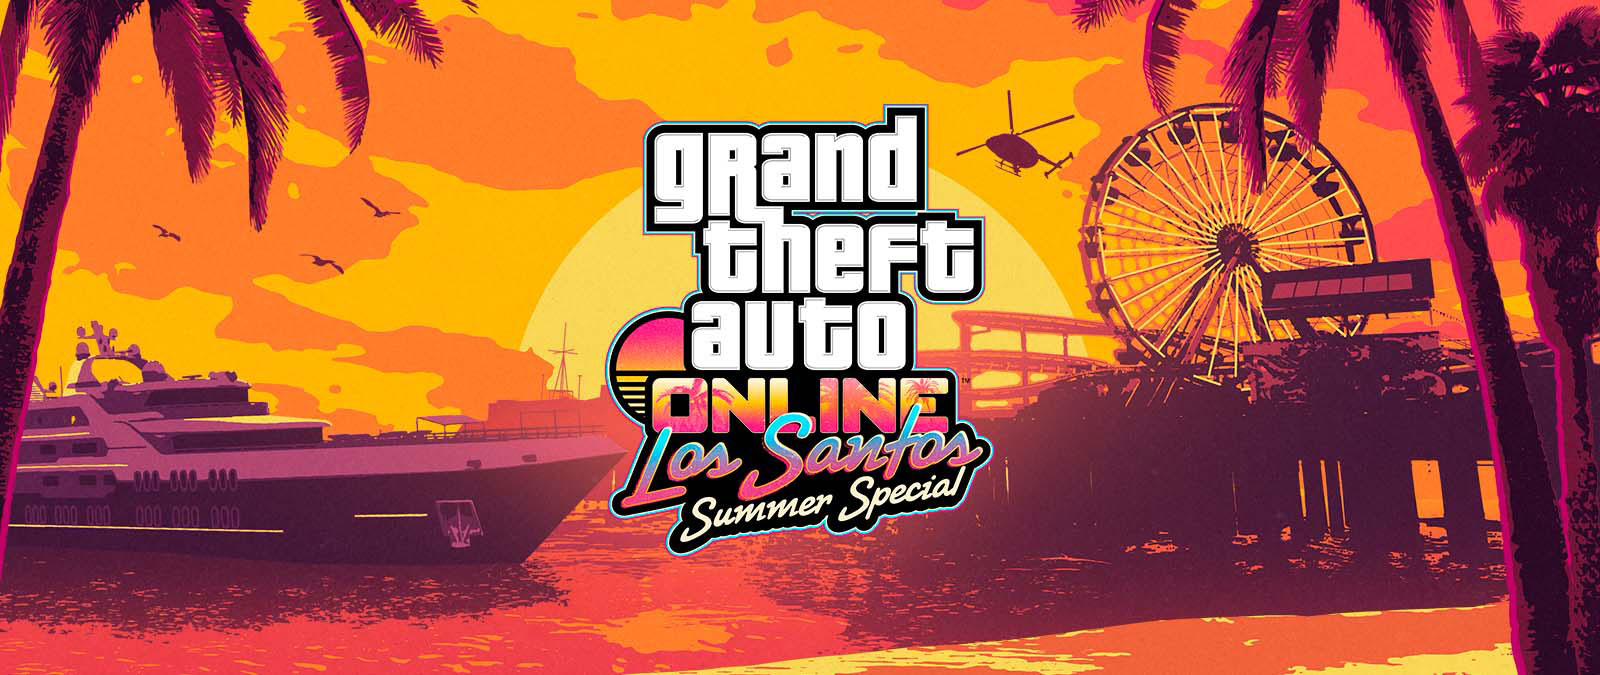 Grand Theft Auto Online. Los Santos Summer Special. Gün batımında bir yat, dönme dolap ve helikopter